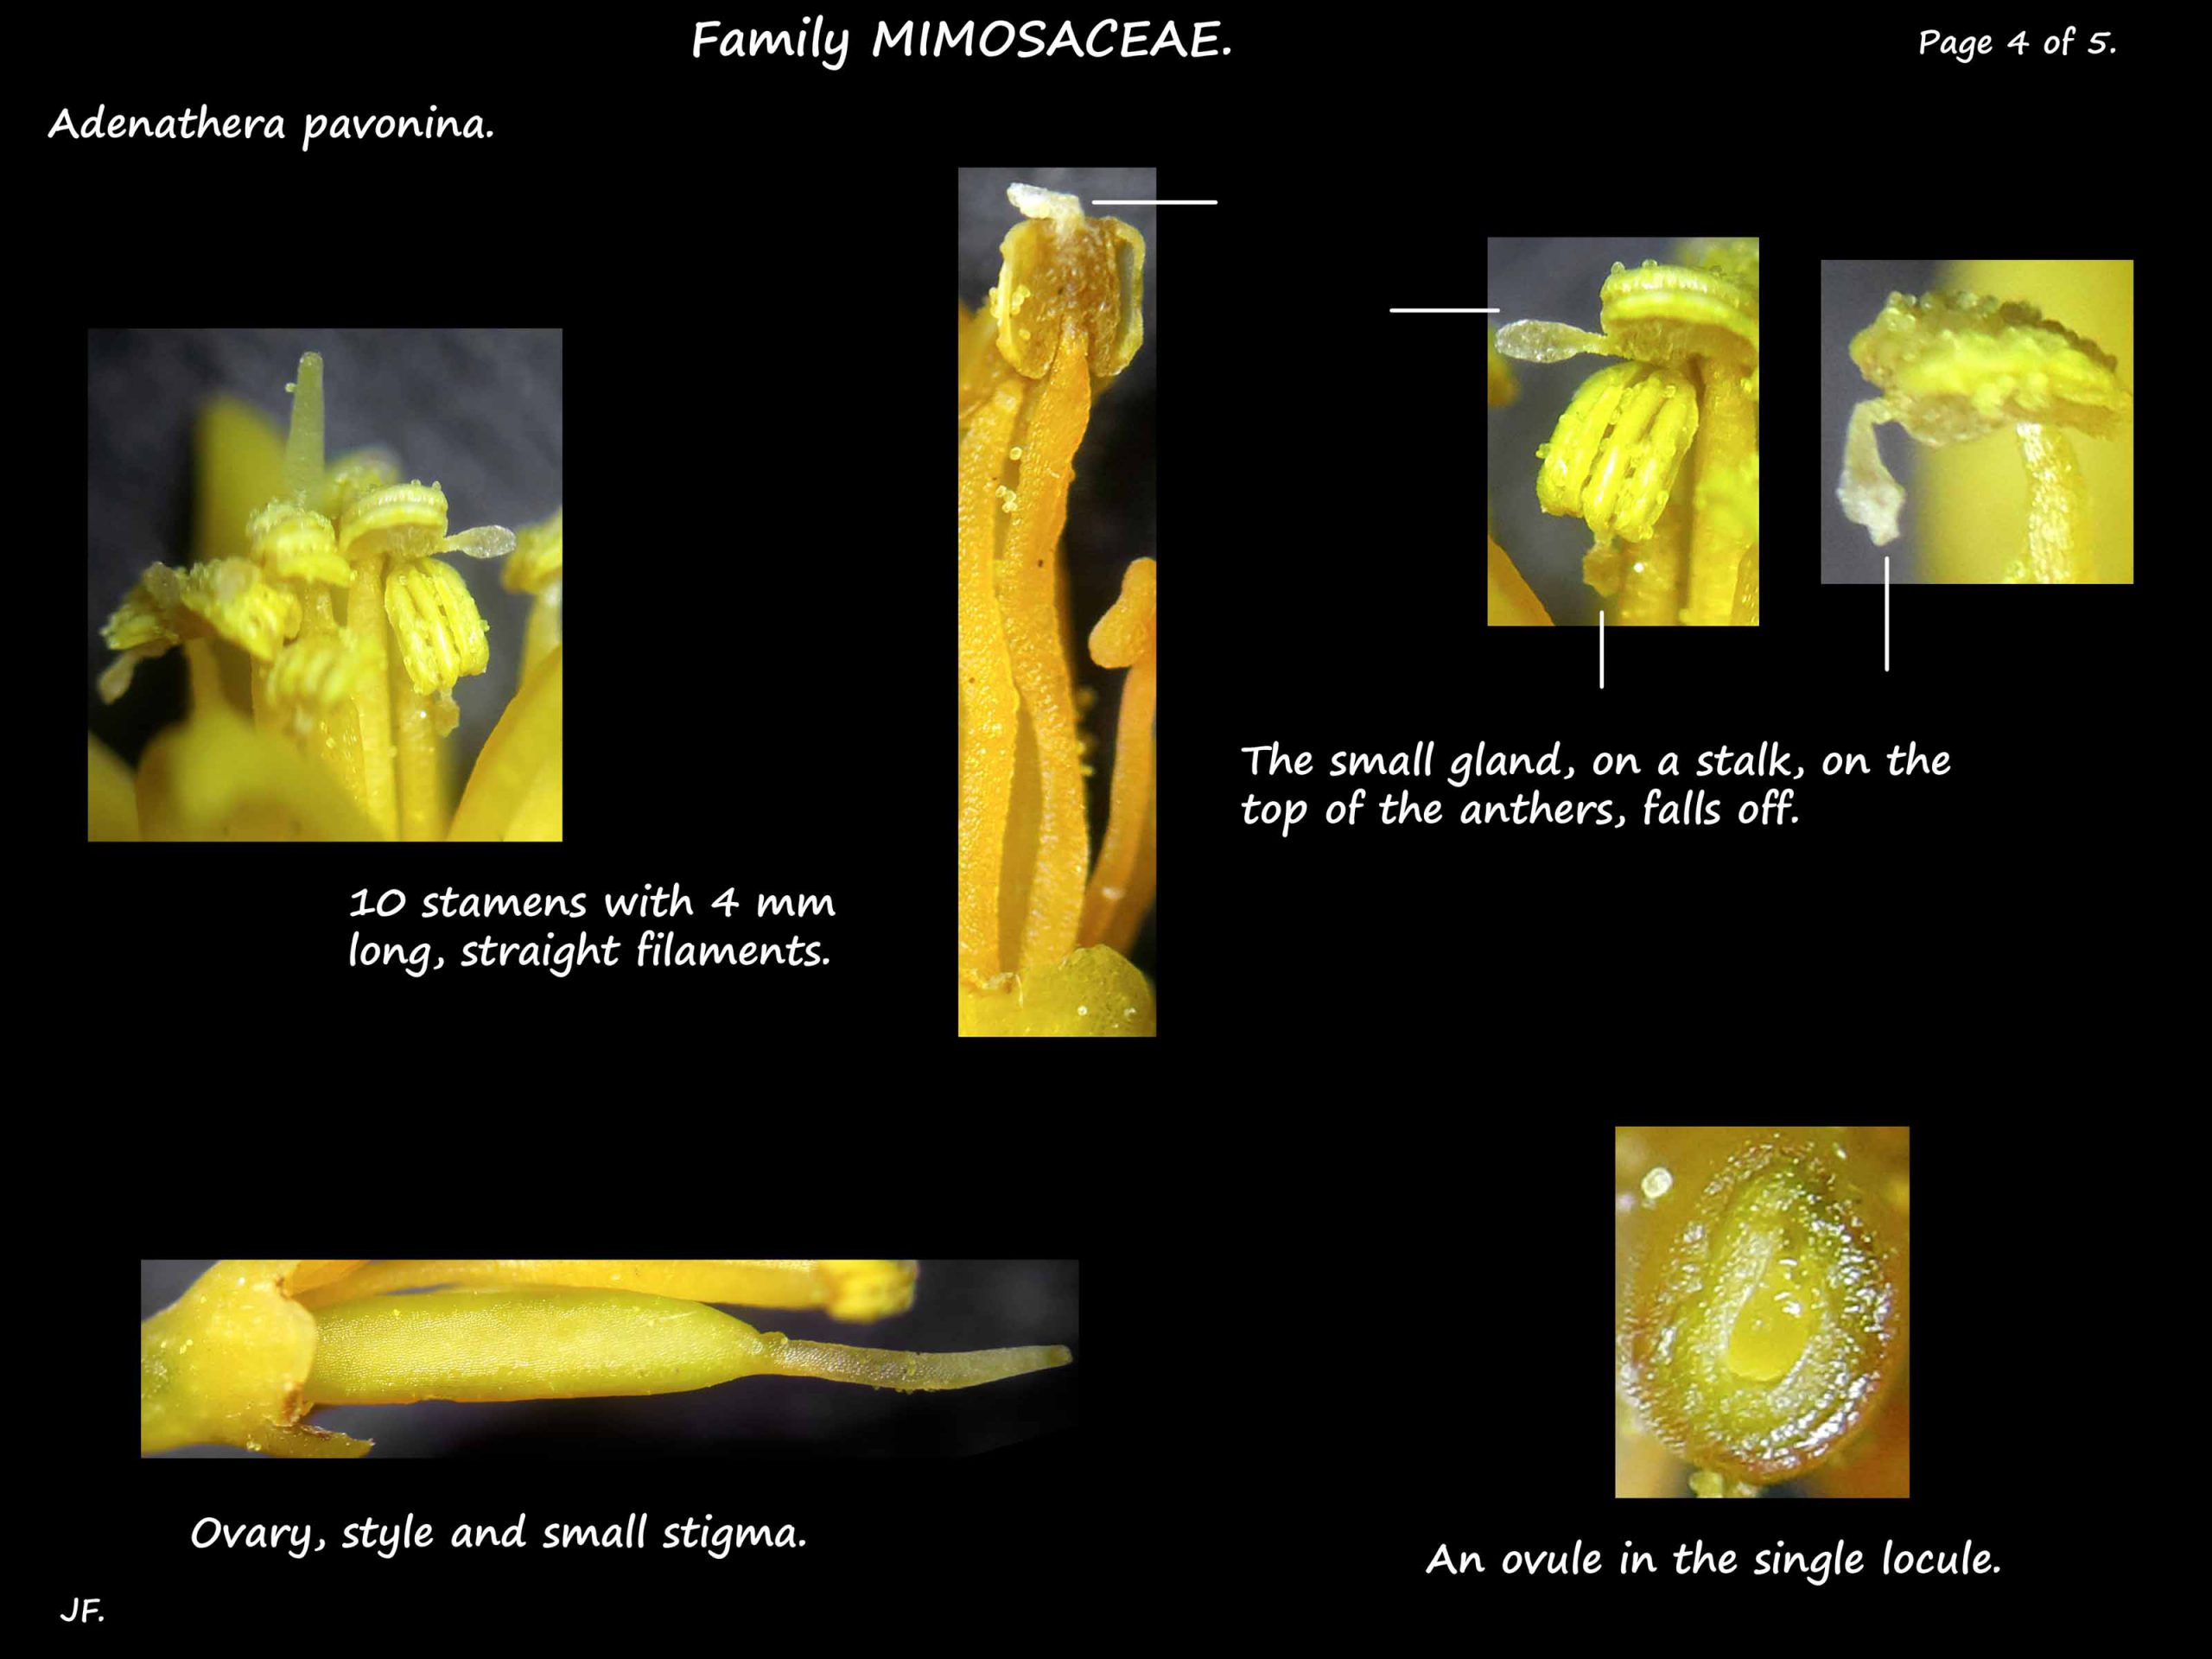 4 Adenathera pavonina stamens & ovary